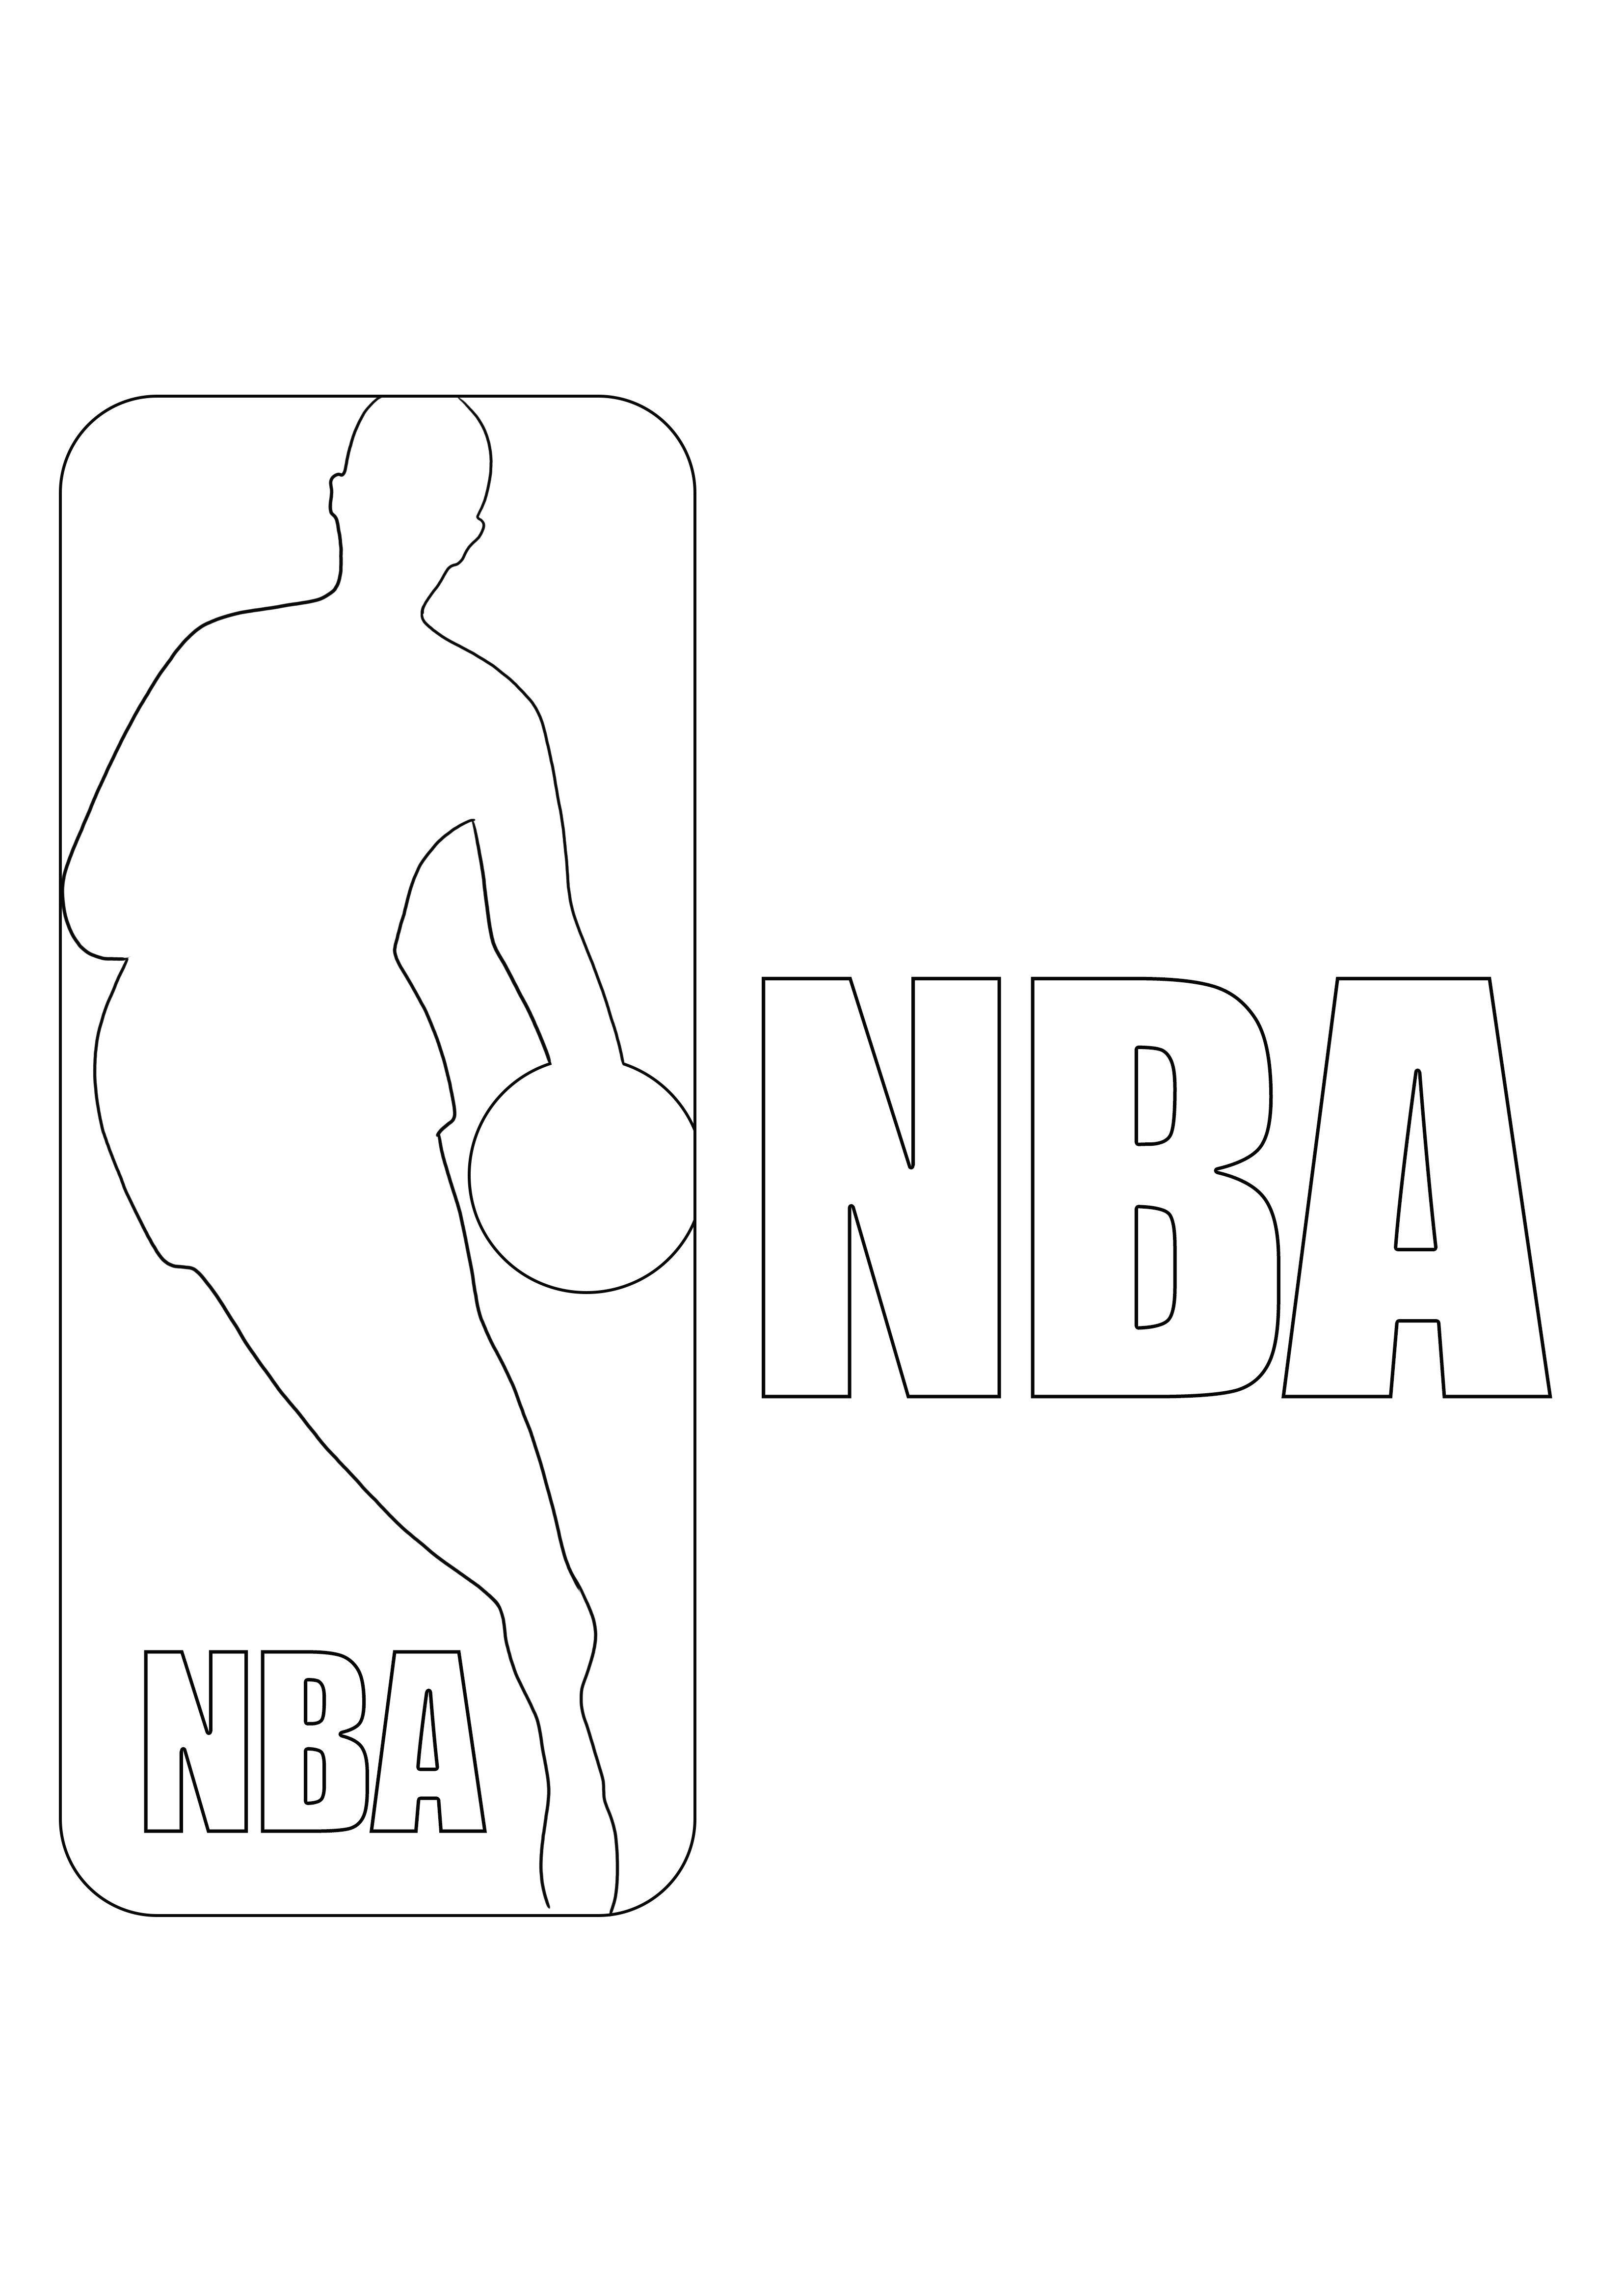 NBA-logo, gratis in te kleuren voor kinderen die van NBA en sport houden kleurplaat